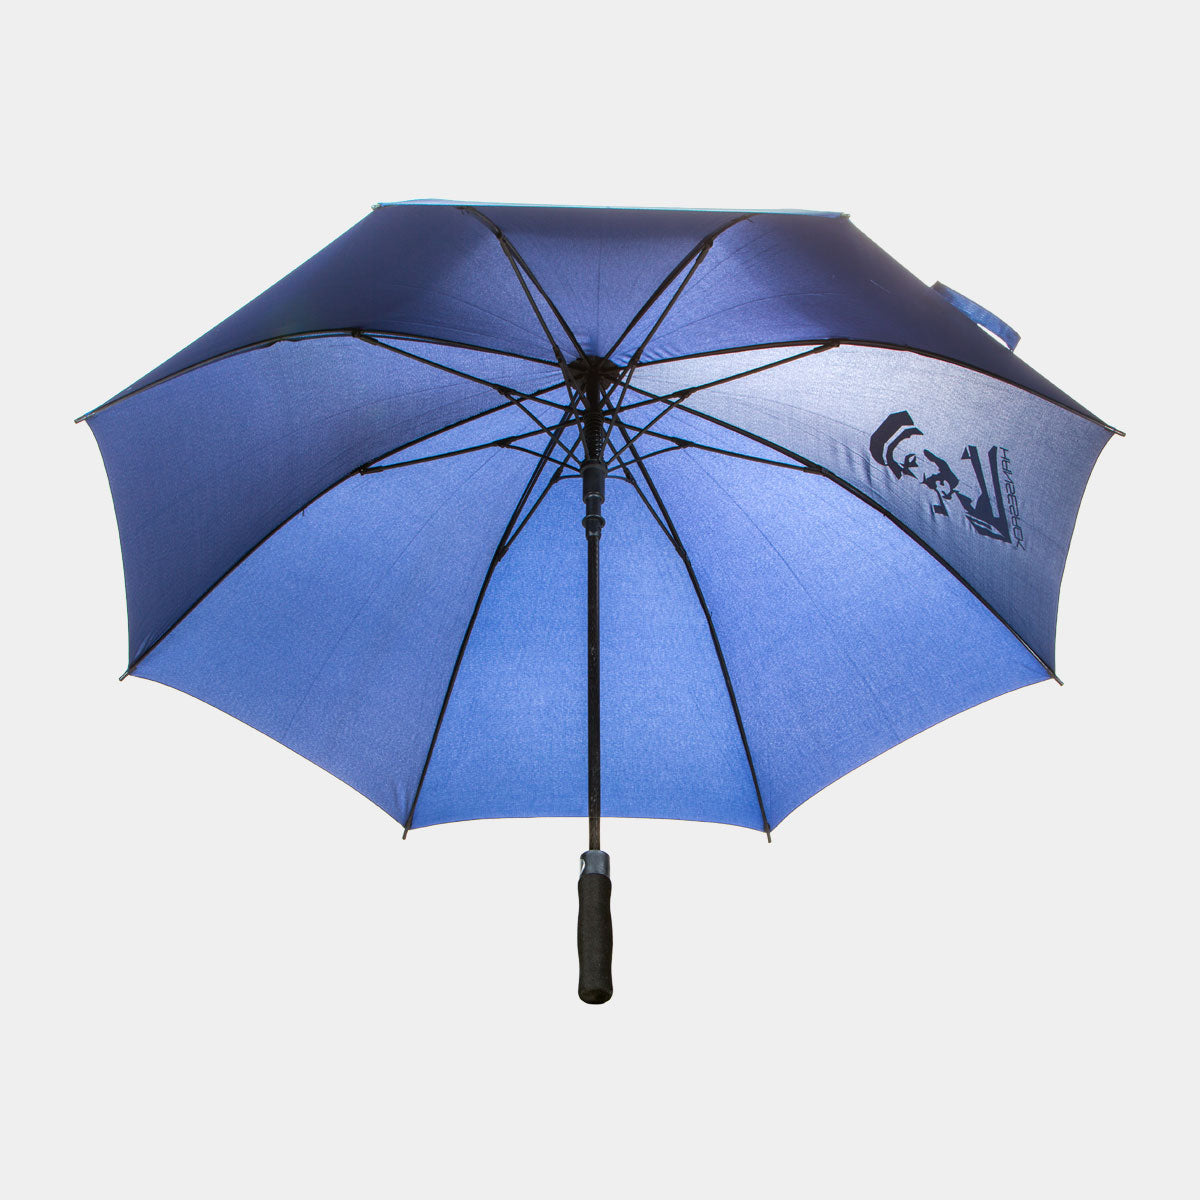 Hansesack Produktbild Regenschirm marine offen mit Hansesack Kopf Logo, von unten